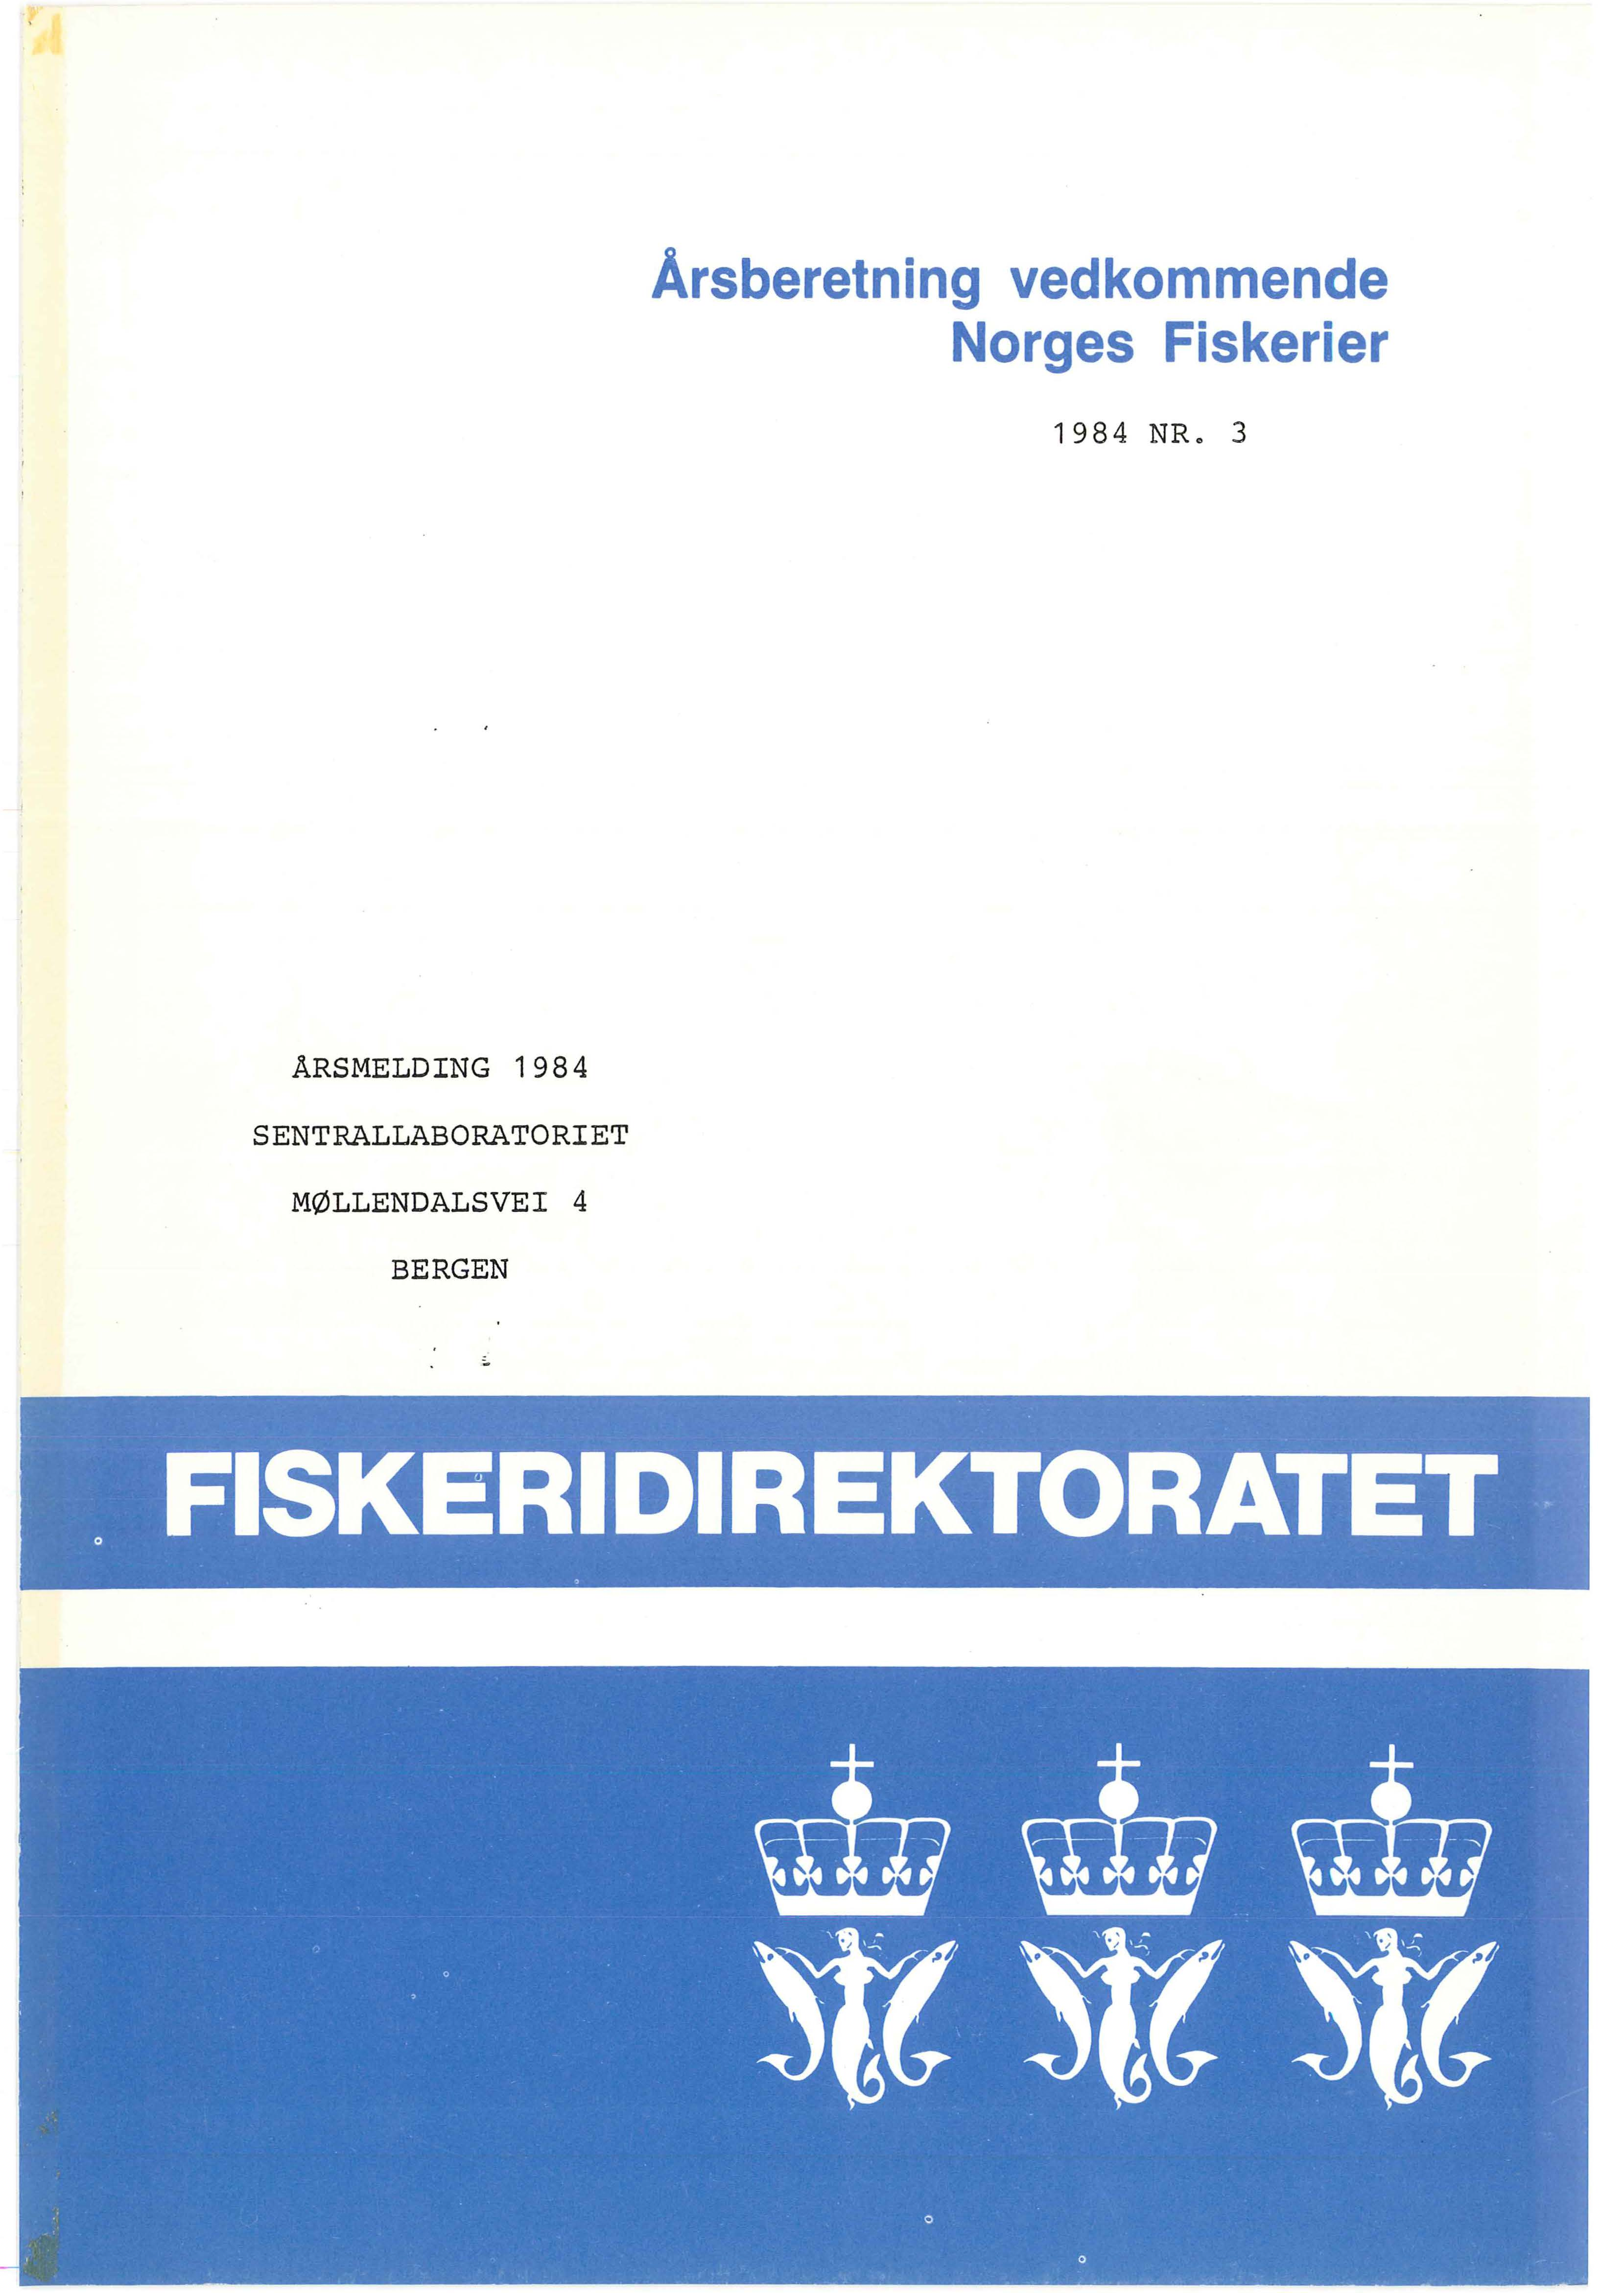 Årsberetning vedkommende Norges Fiskerier 1984 NR.